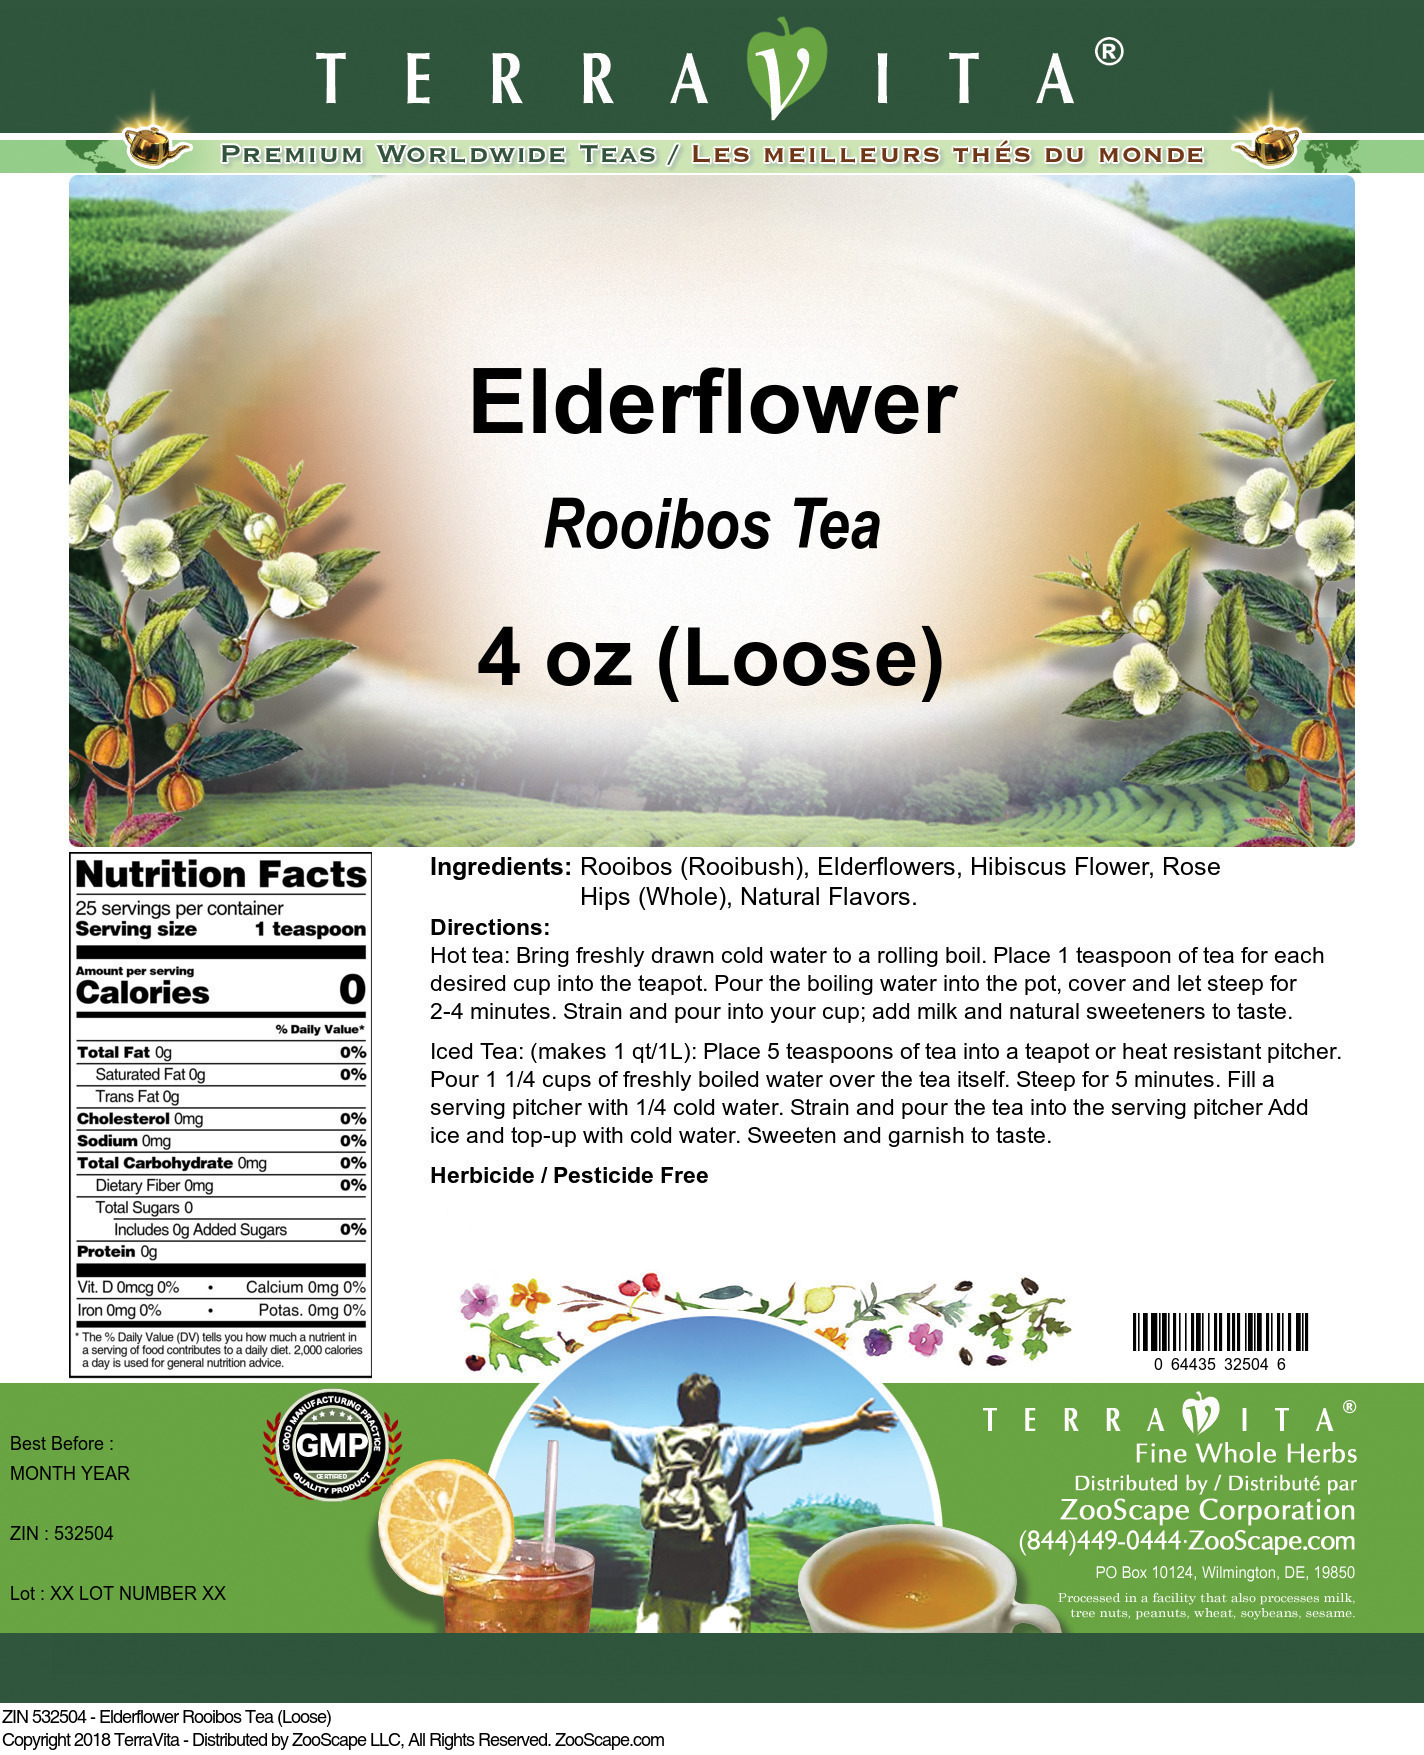 Elderflower Rooibos Tea (Loose) - Label